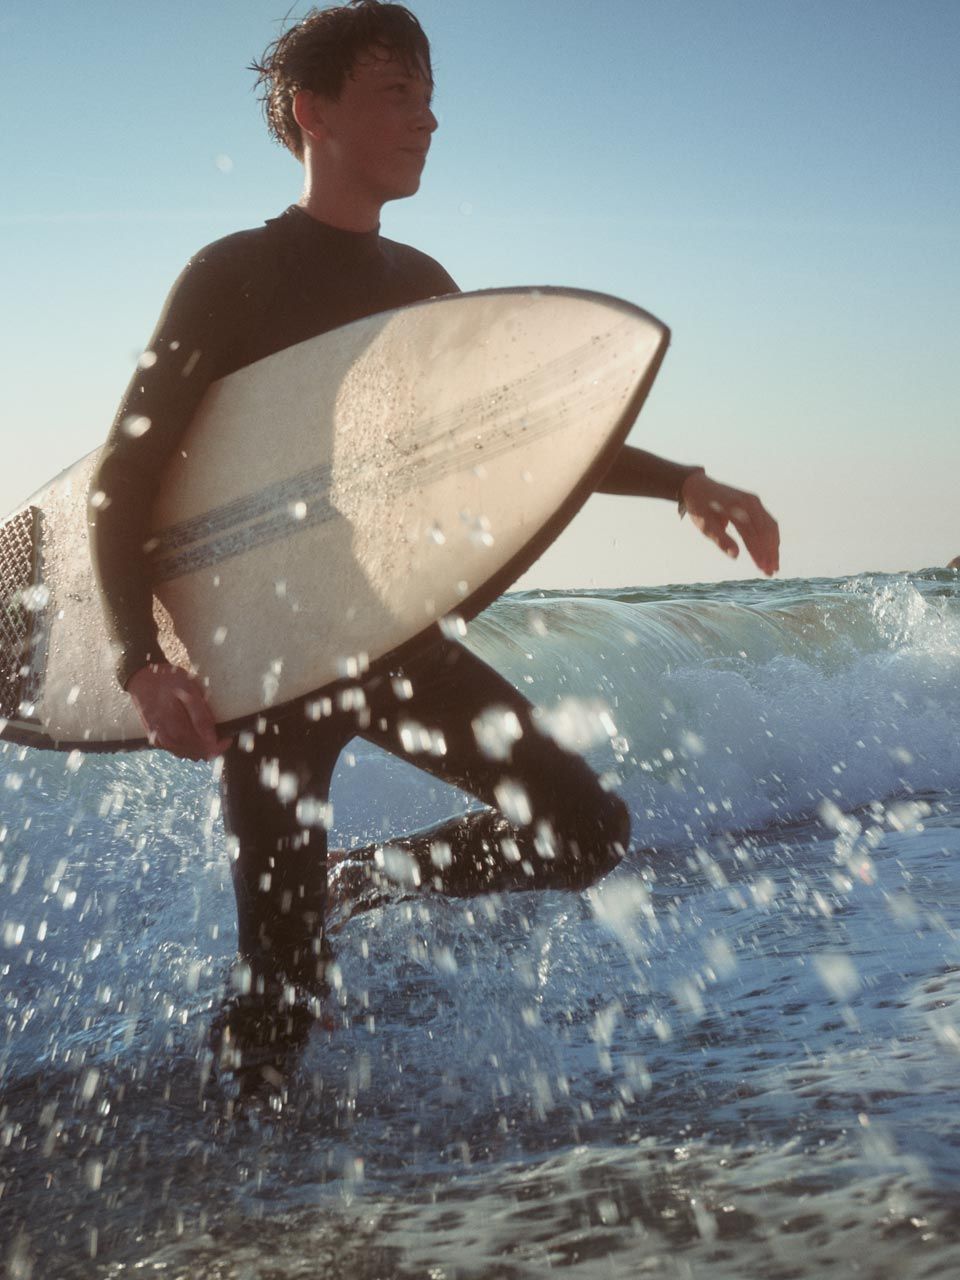 Strandszene - Ein junger Mann watet mit einen Surfbrett unter dem Arm durch das kniehohe Wasser.  